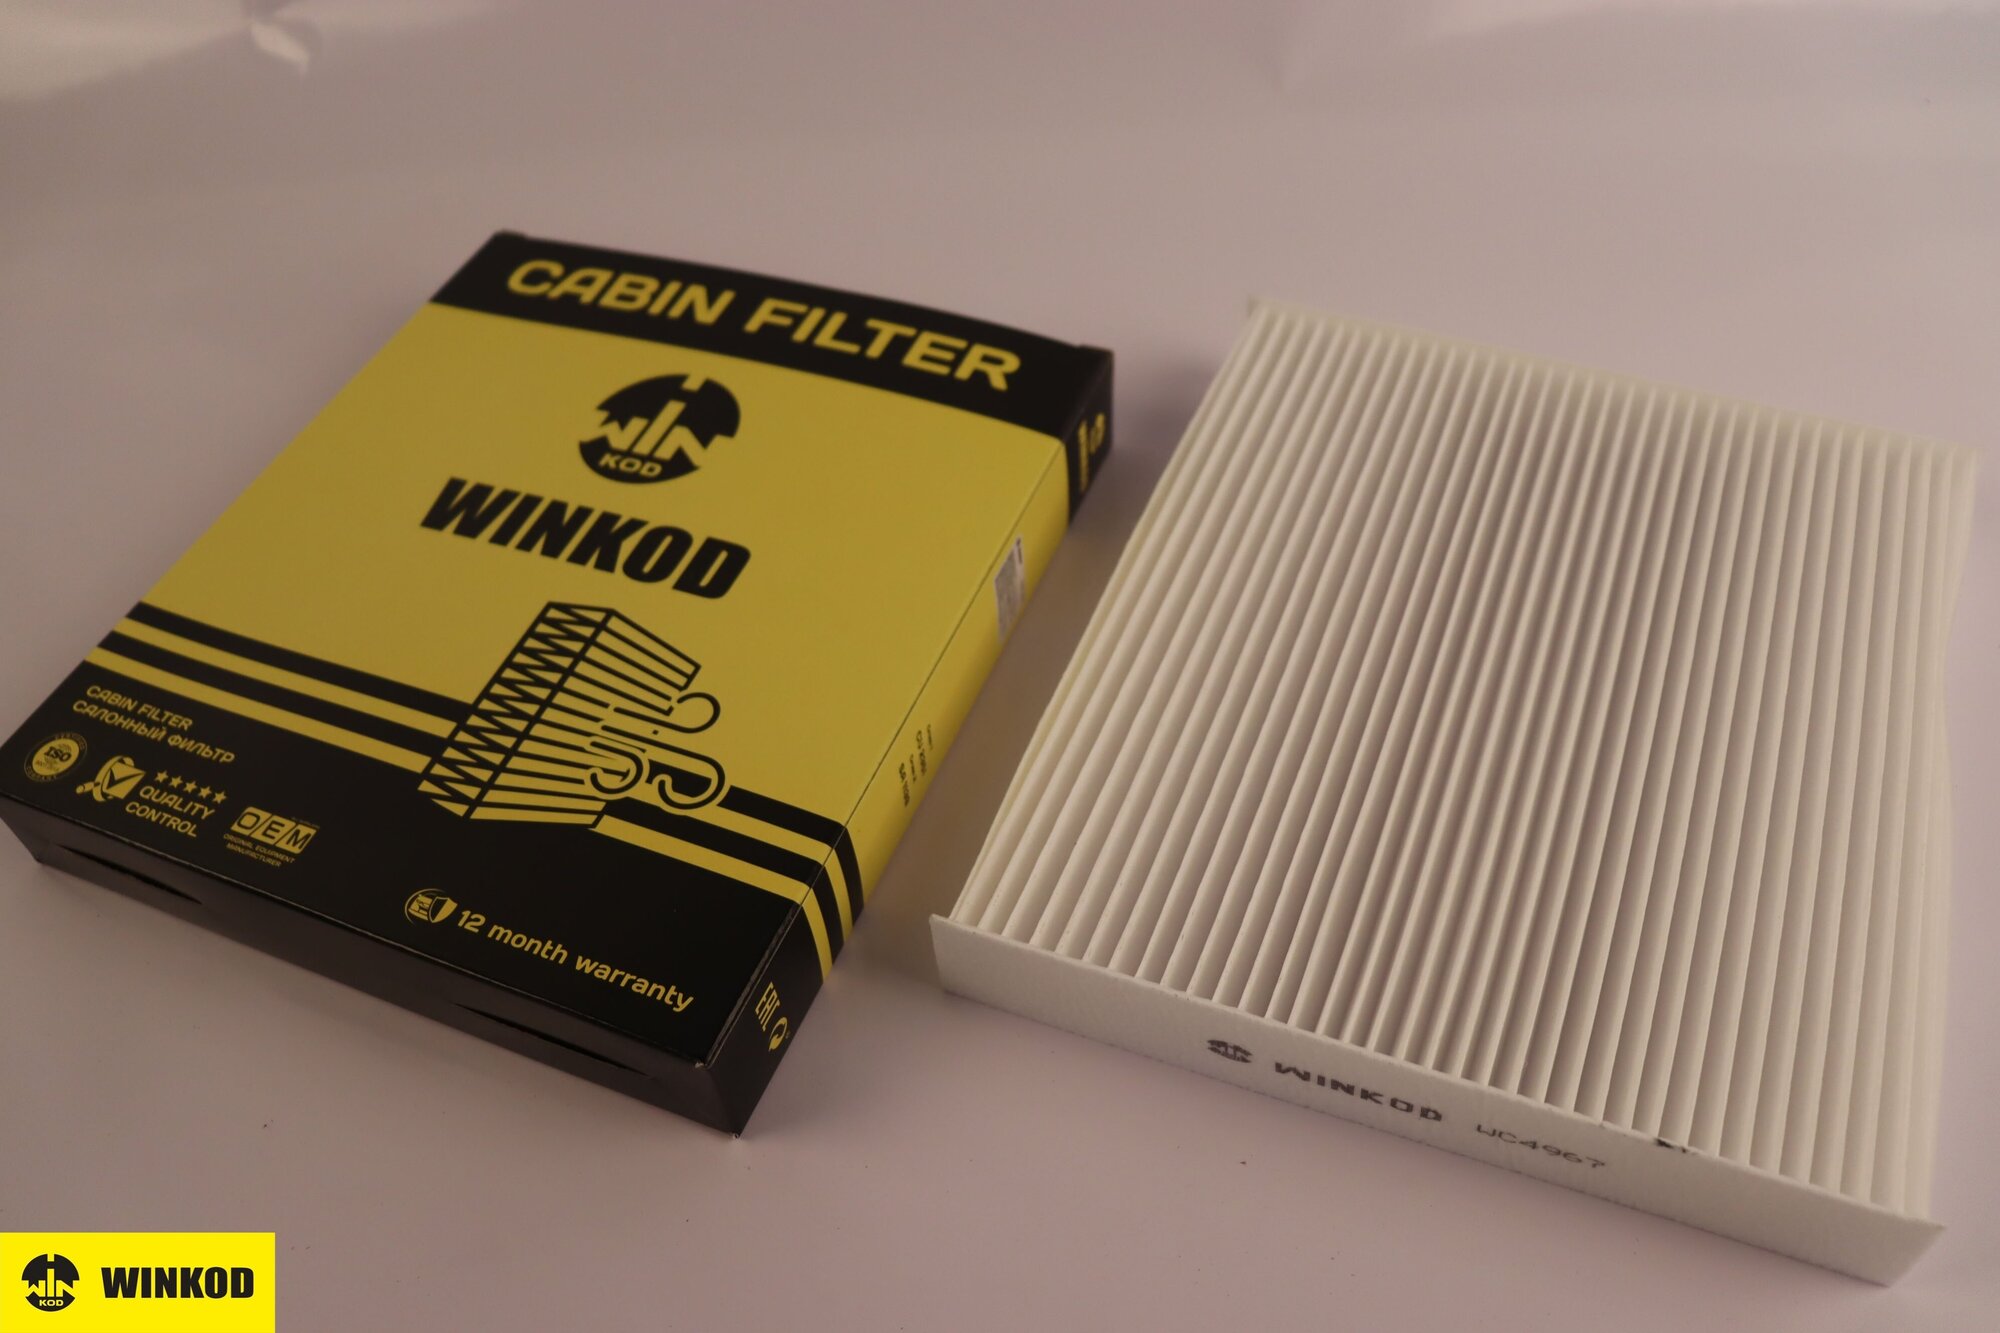 Салонный фильтр WC4967 аналог MANN FILTER CU2351 для Honda Civic VI 94-01 г. в. CR-V 95-02 г. в. Insight с 2000 г, Rover 400 с 1994 г.